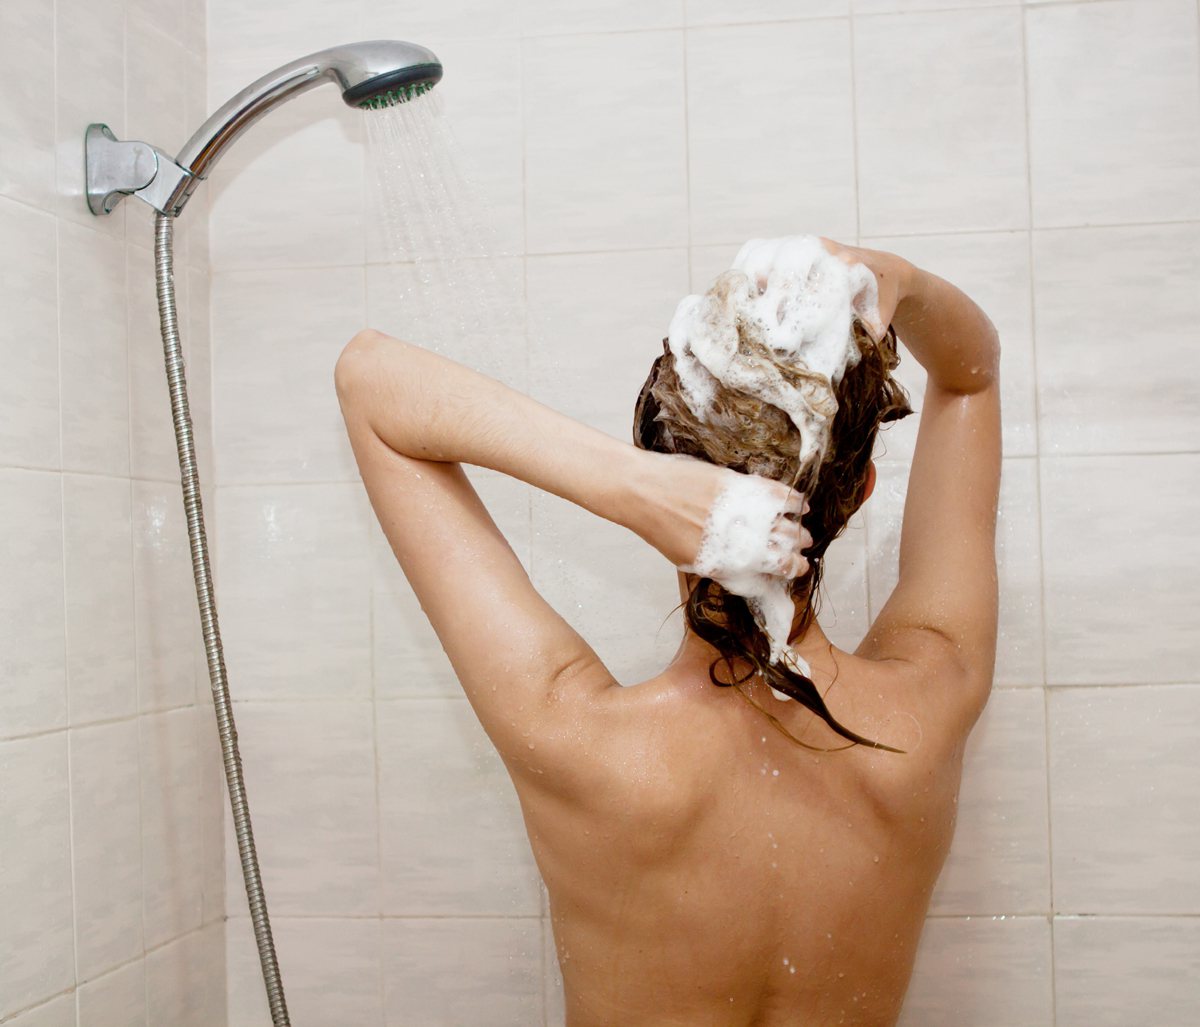 有些人發現不用洗髮精洗頭方式可以讓頭髮變得比較健康、落髮減少。